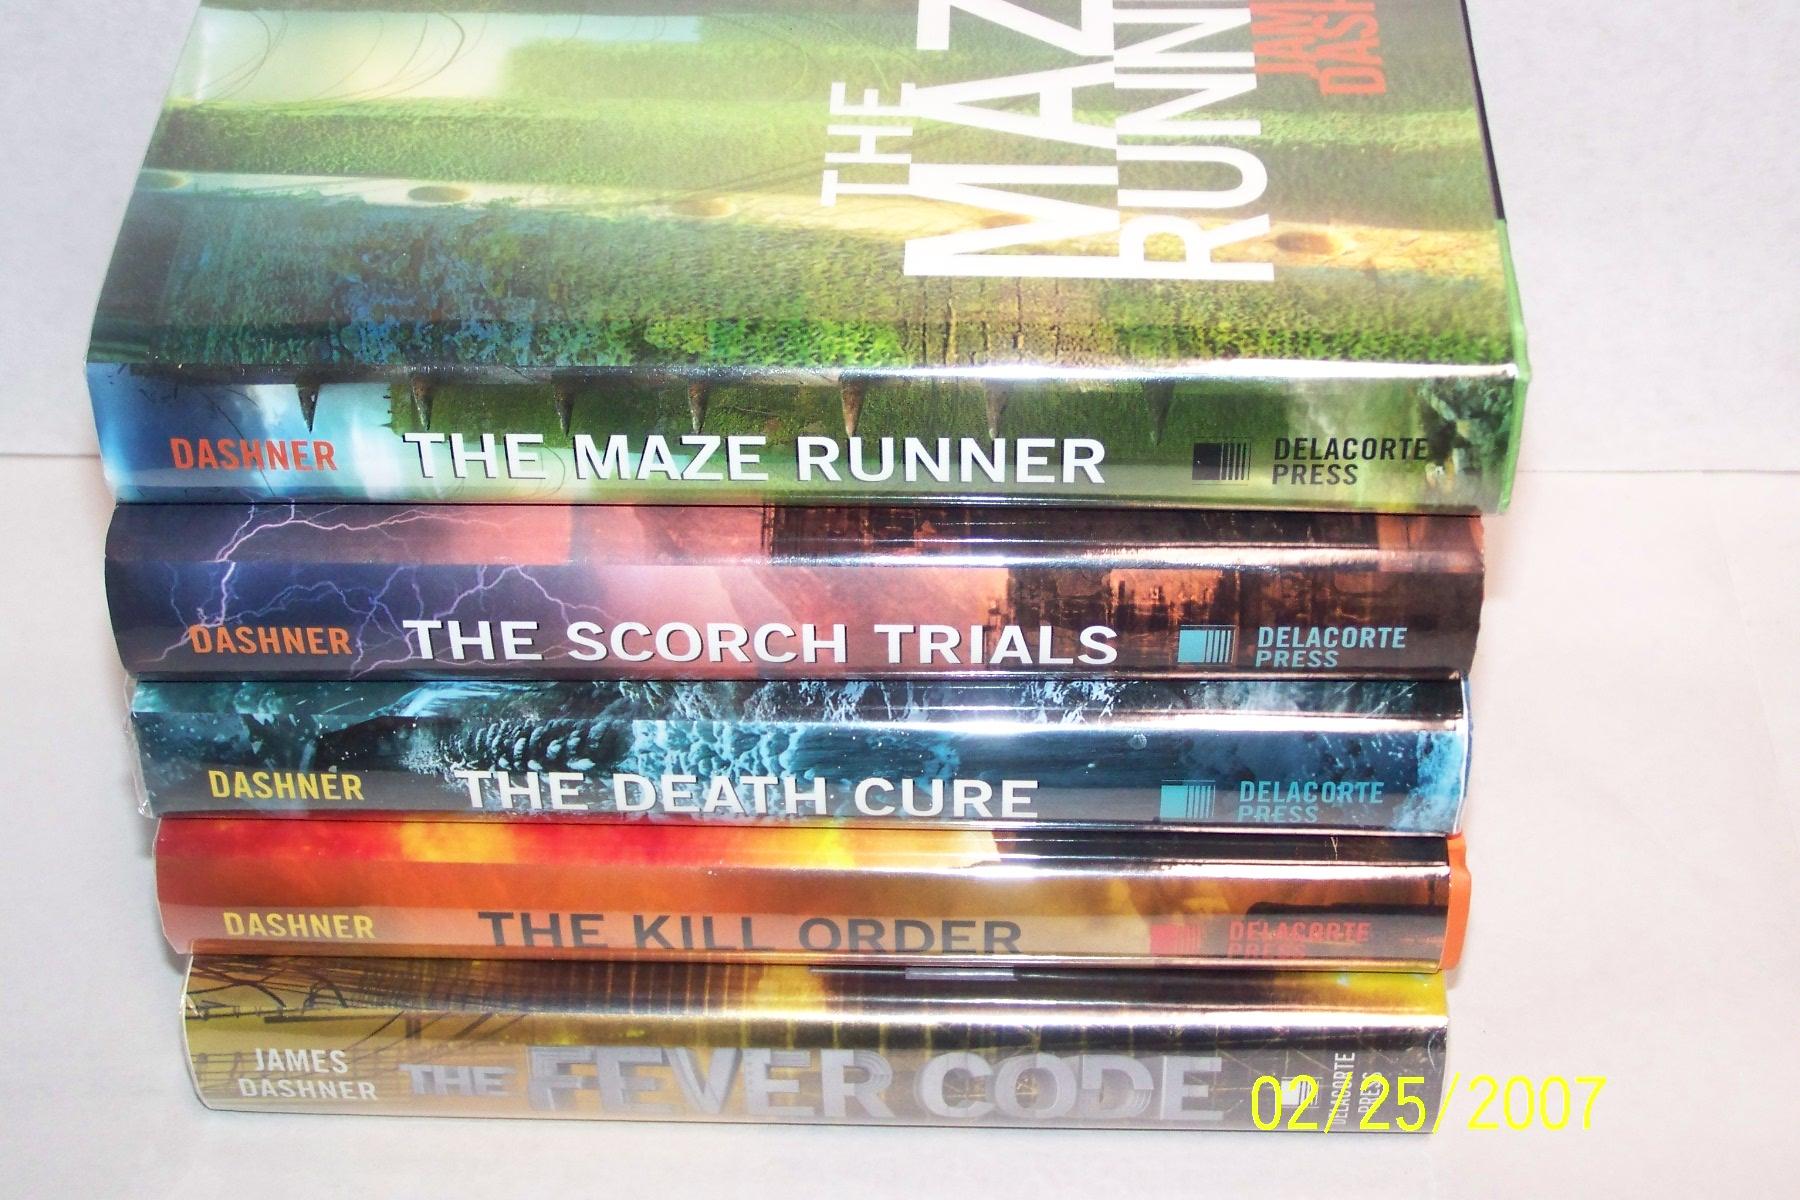 The Maze Runner SET OF 4 BOOKS by James Dashner, Paperback